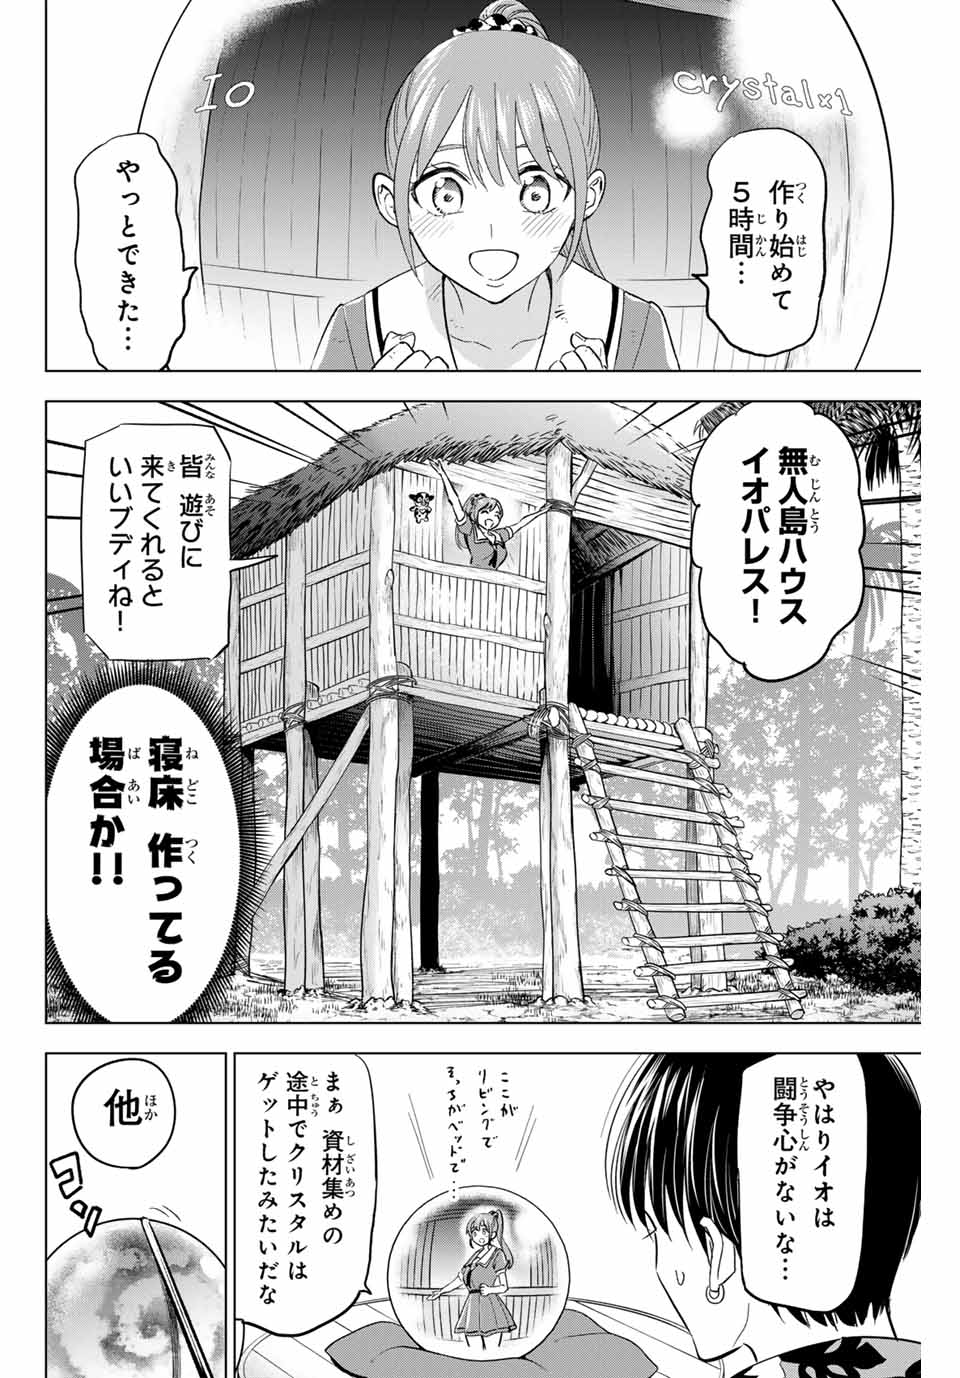 Kuroneko to Majo no Kyoushitsu - Chapter 49 - Page 2